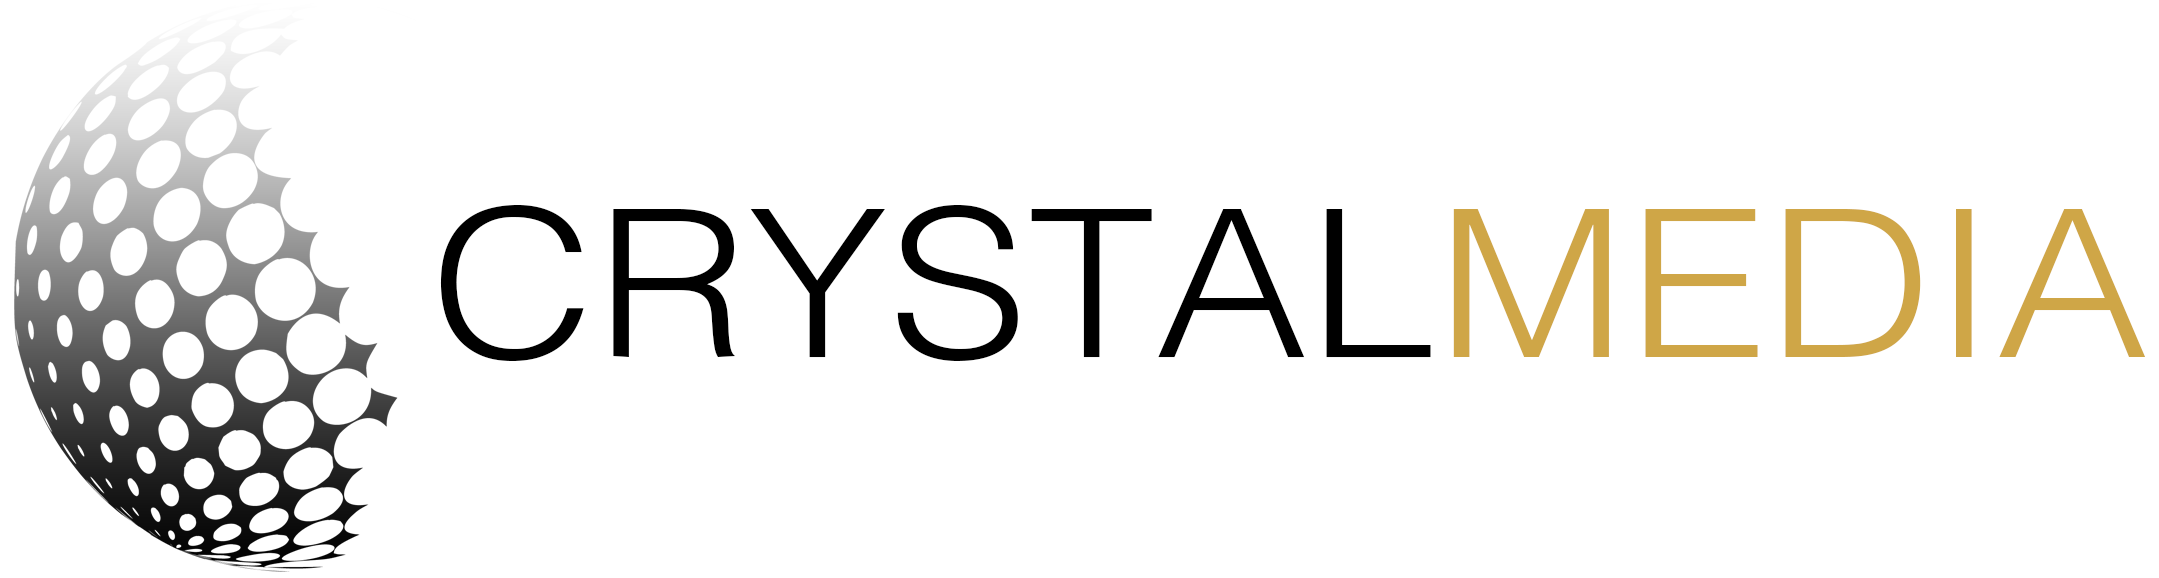 Crystal Media